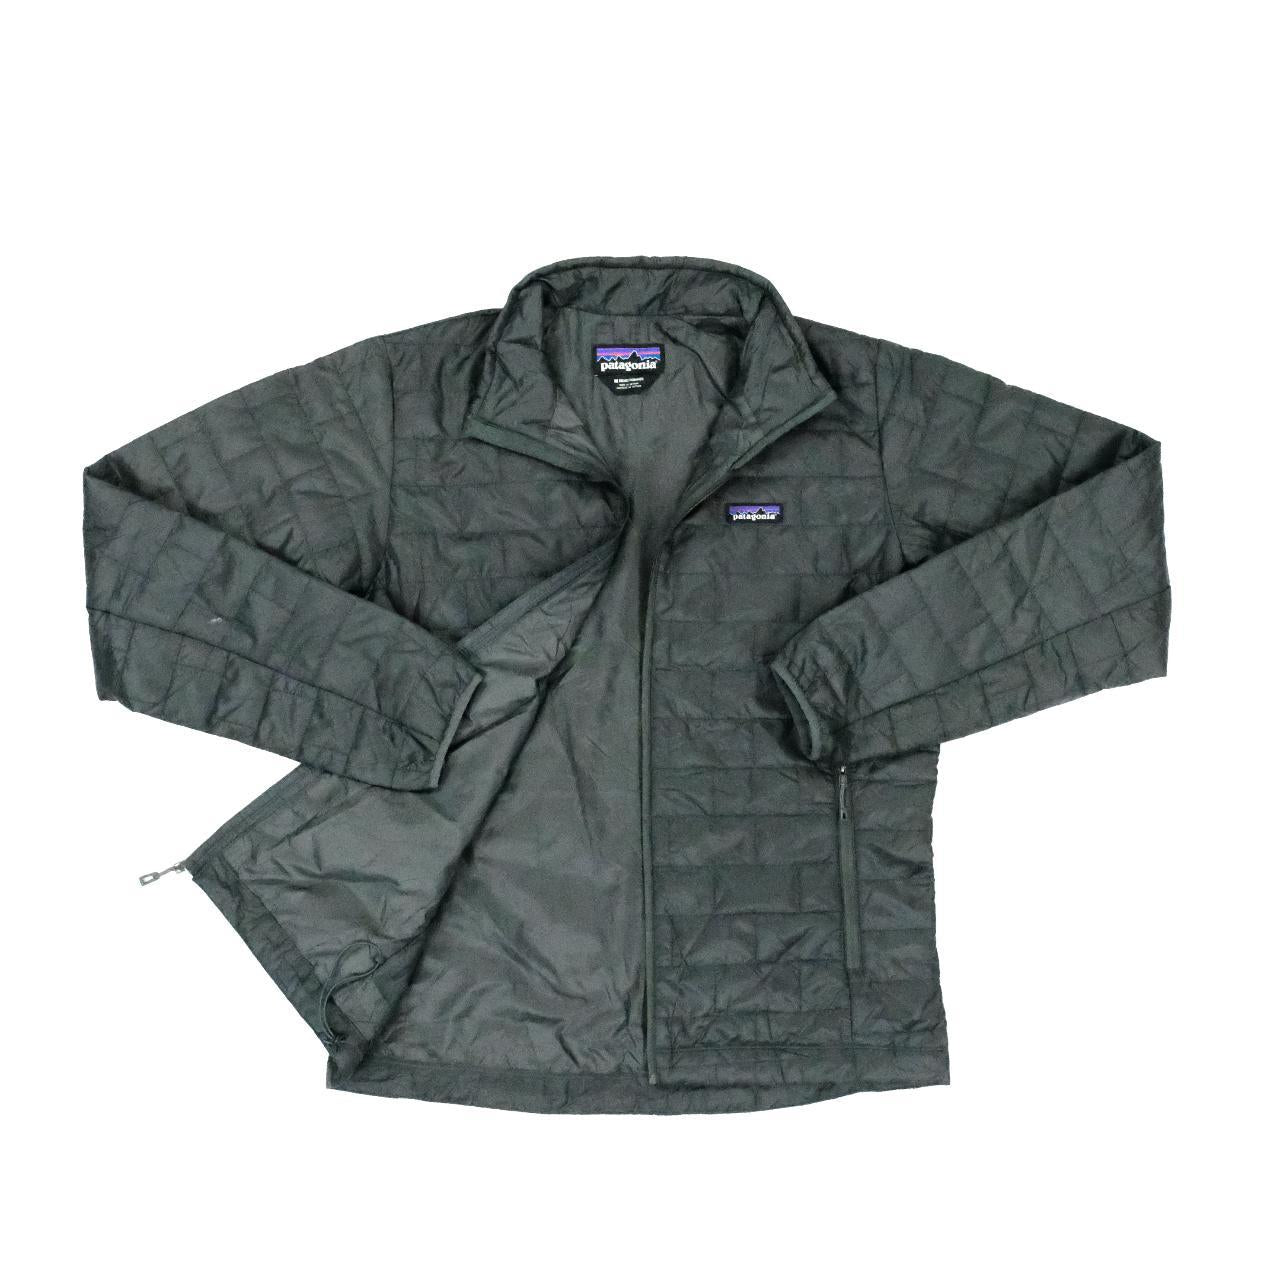 Patagonia Puffer Jacket